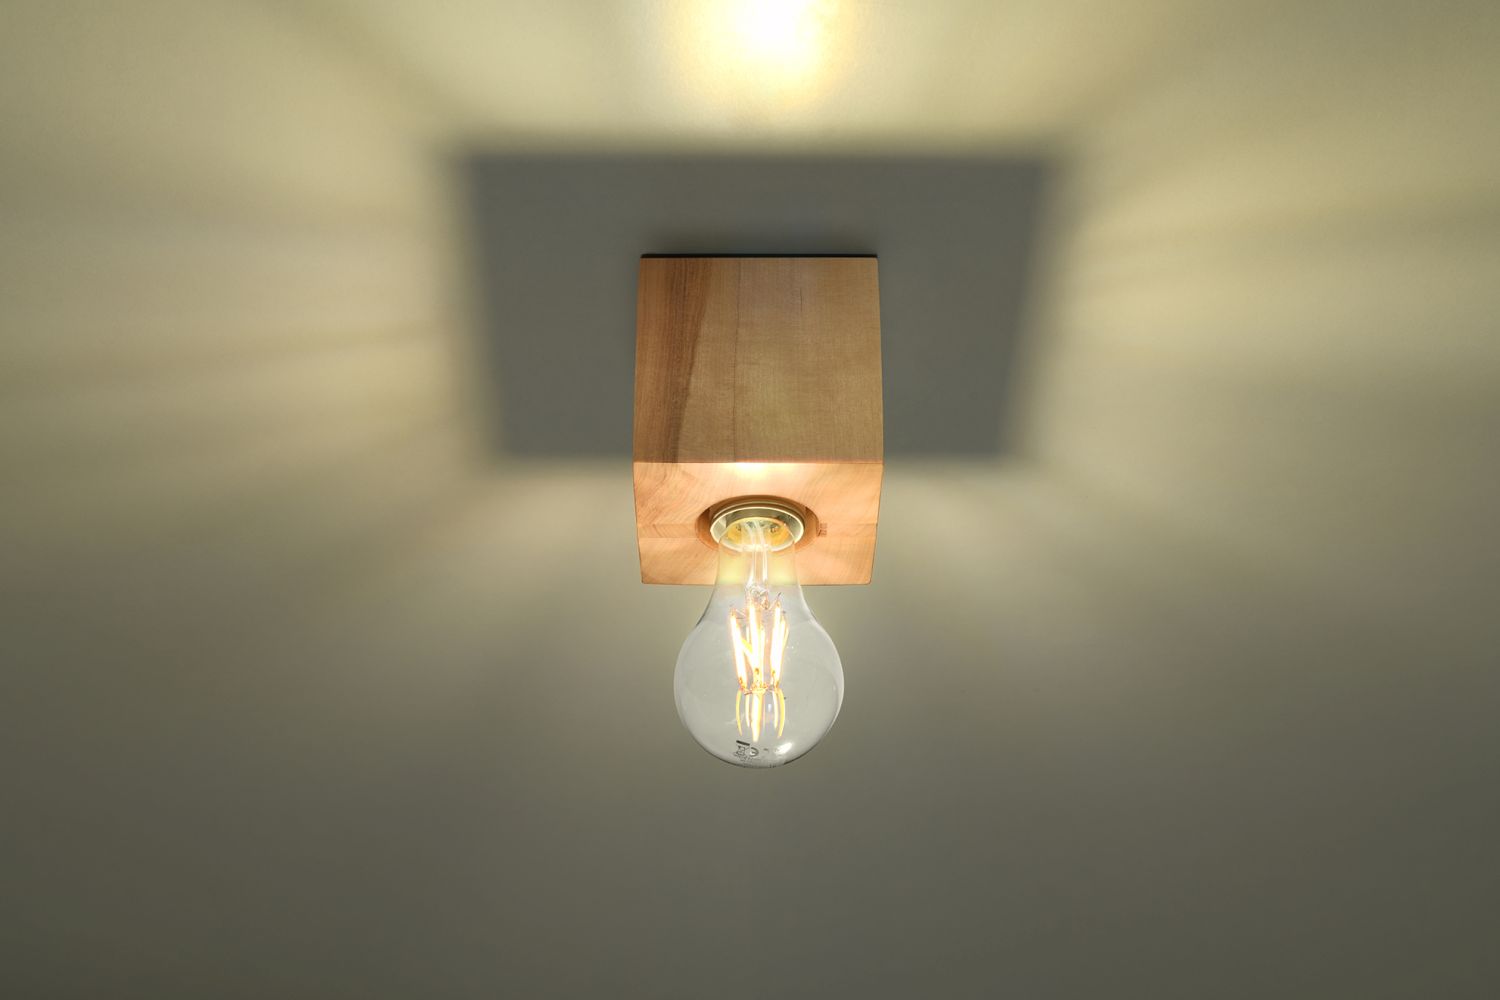 Spot Lampe Holz quadratisch B:10cm klein Modern kompakt